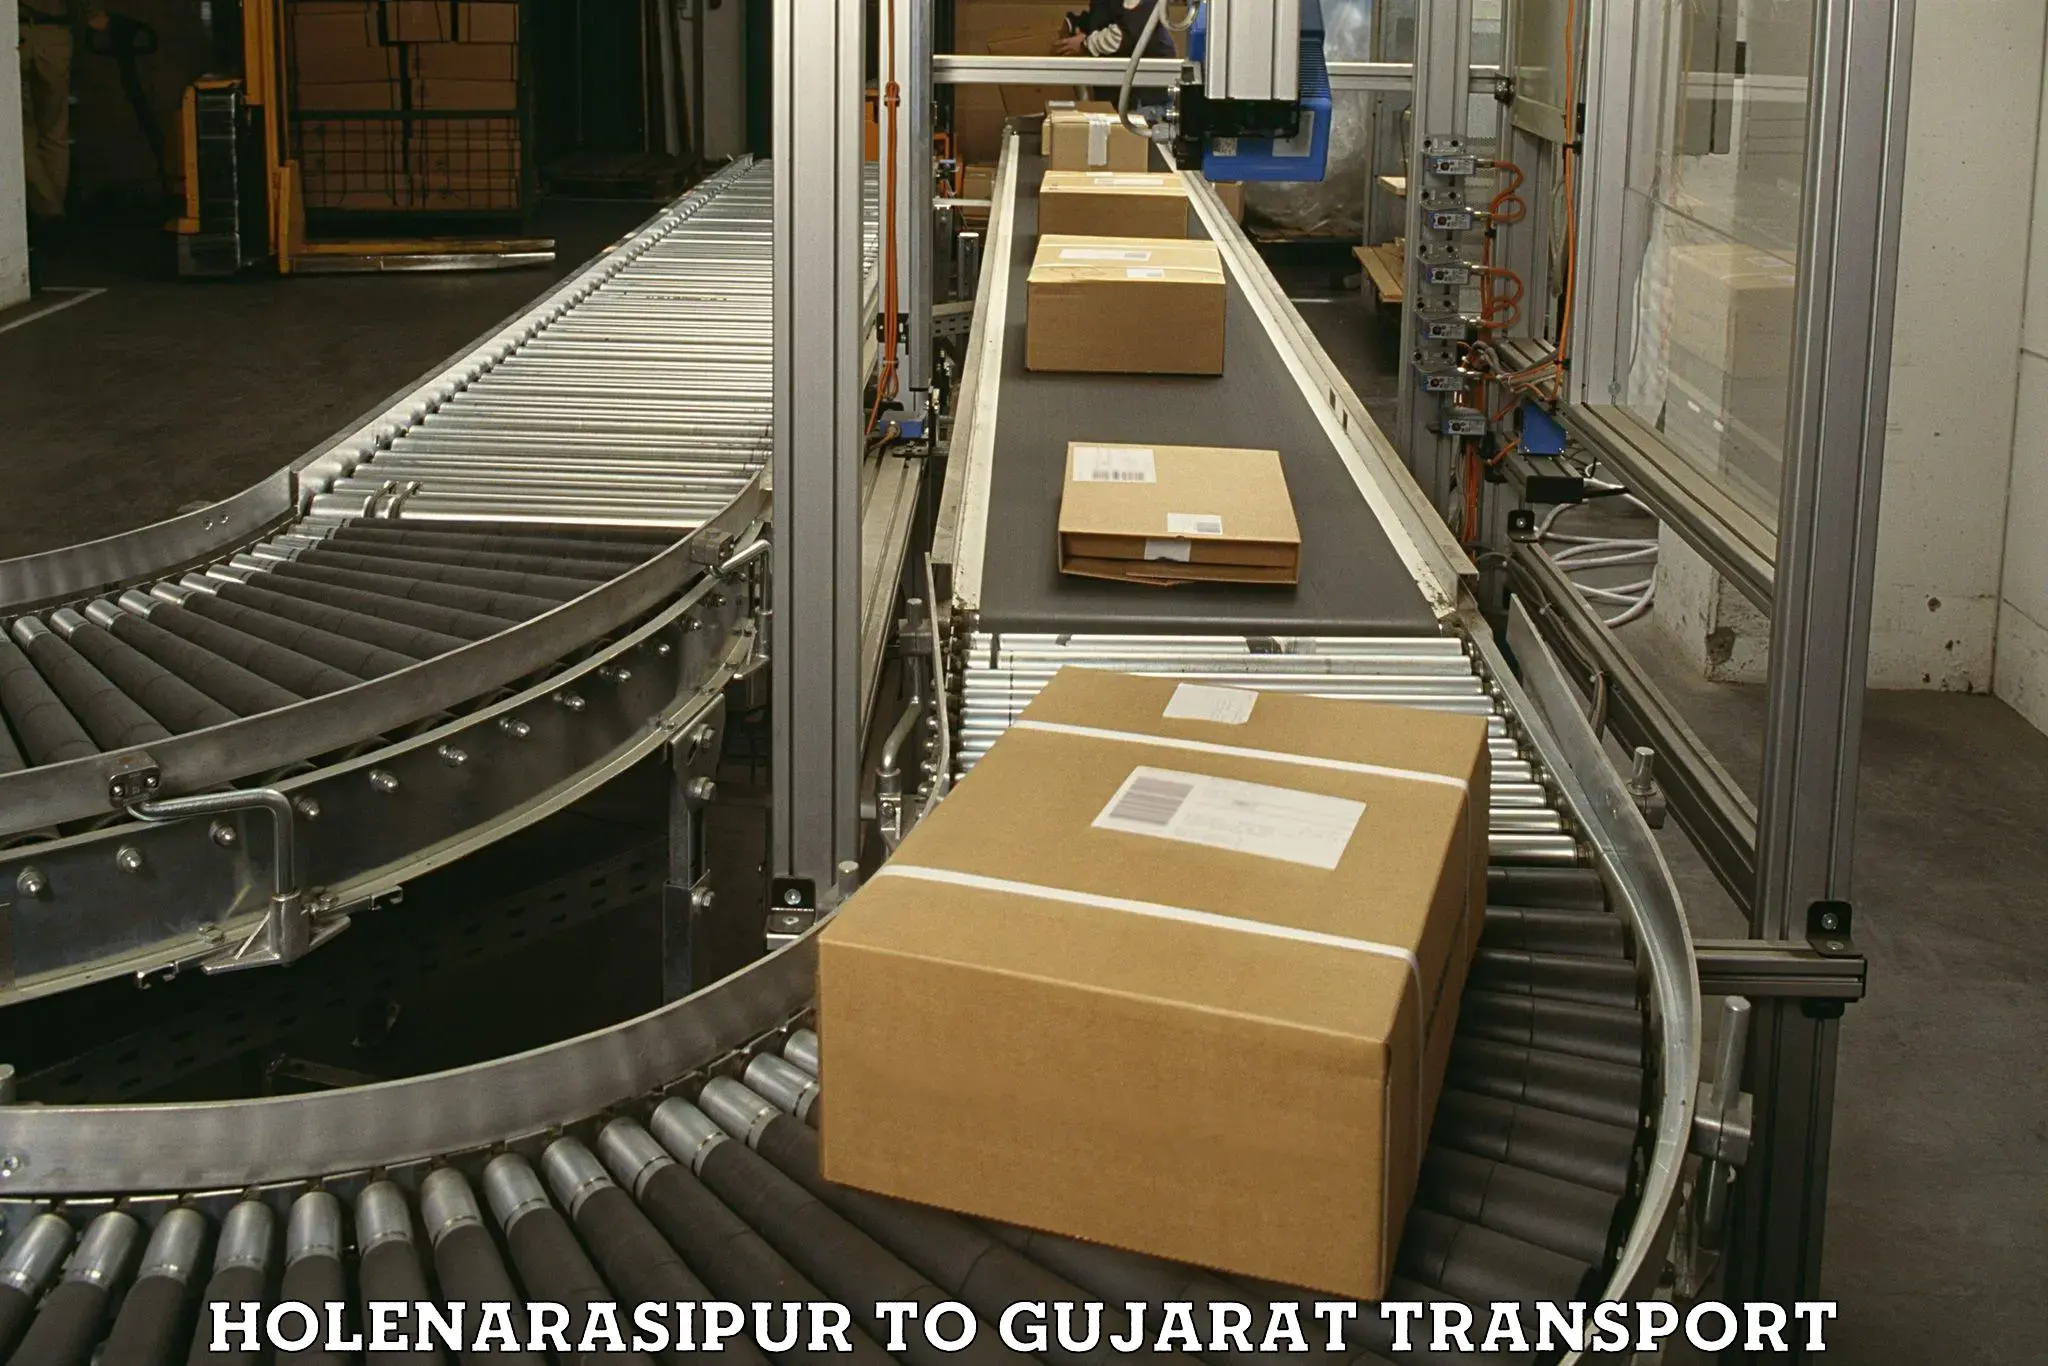 Commercial transport service Holenarasipur to Junagadh